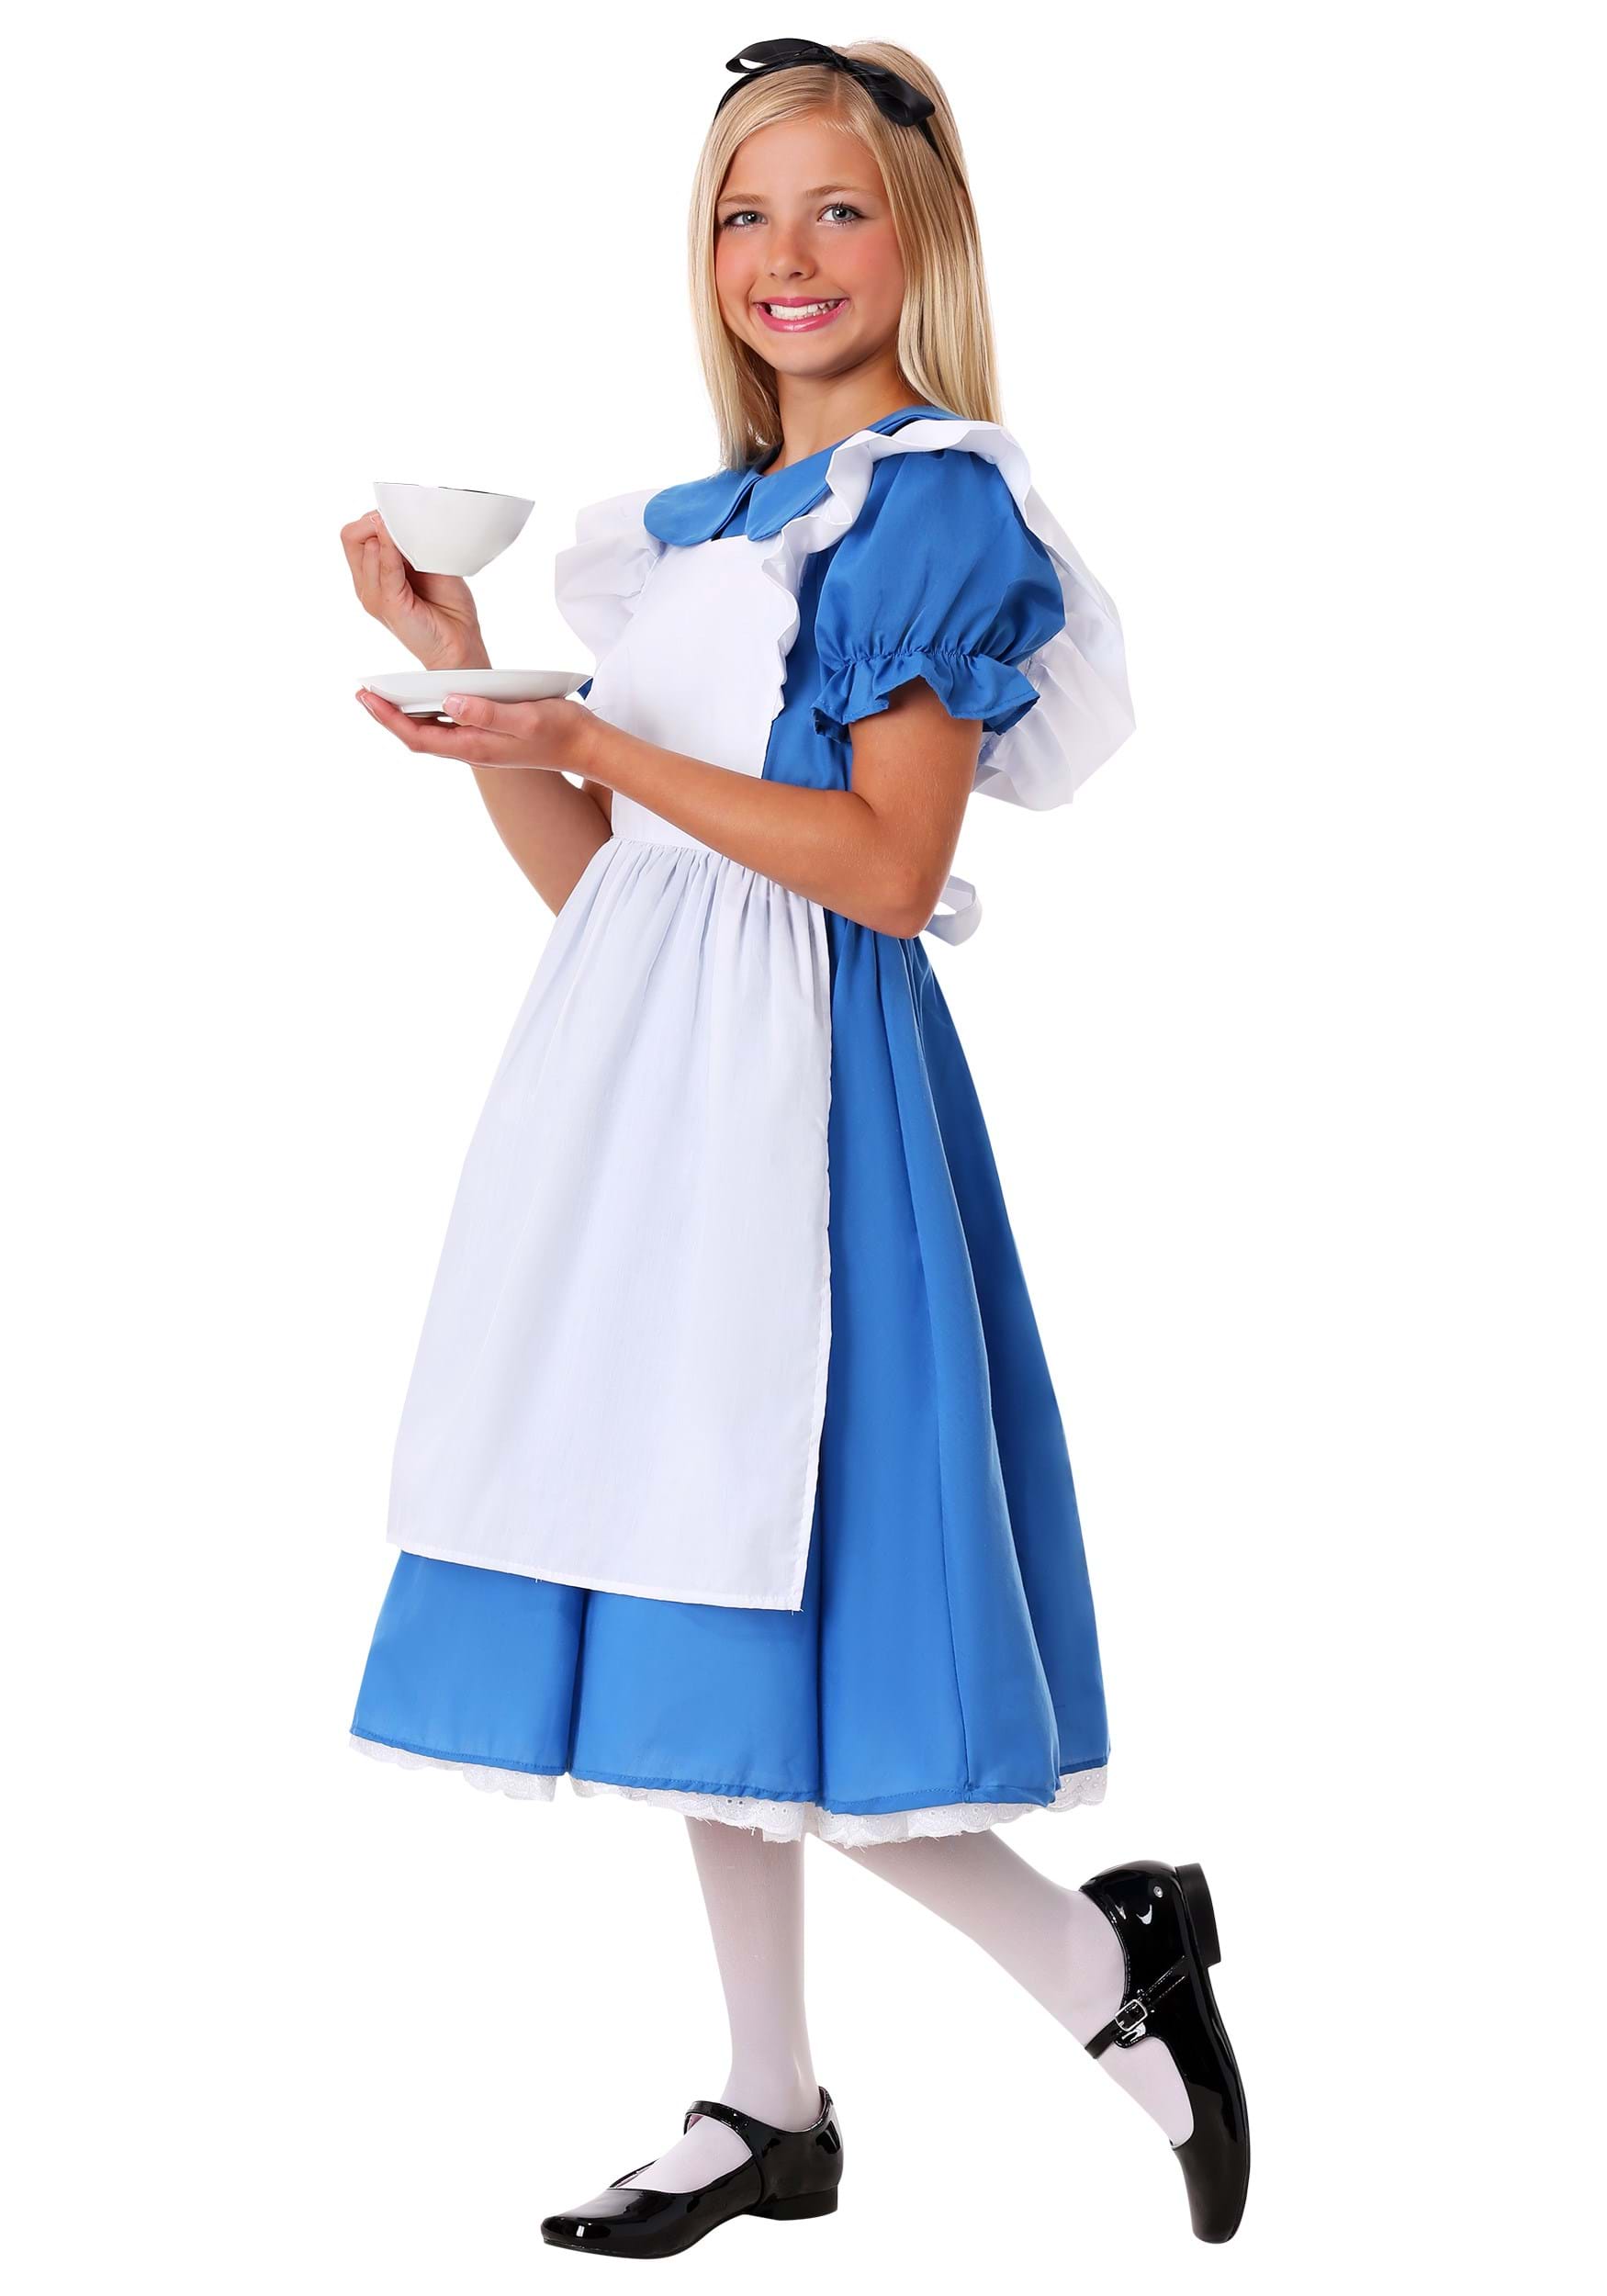 BABY GIRL Alice in Wonderland Apron -   Alice in wonderland birthday,  Alice in wonderland costume, Alice in wonderland party